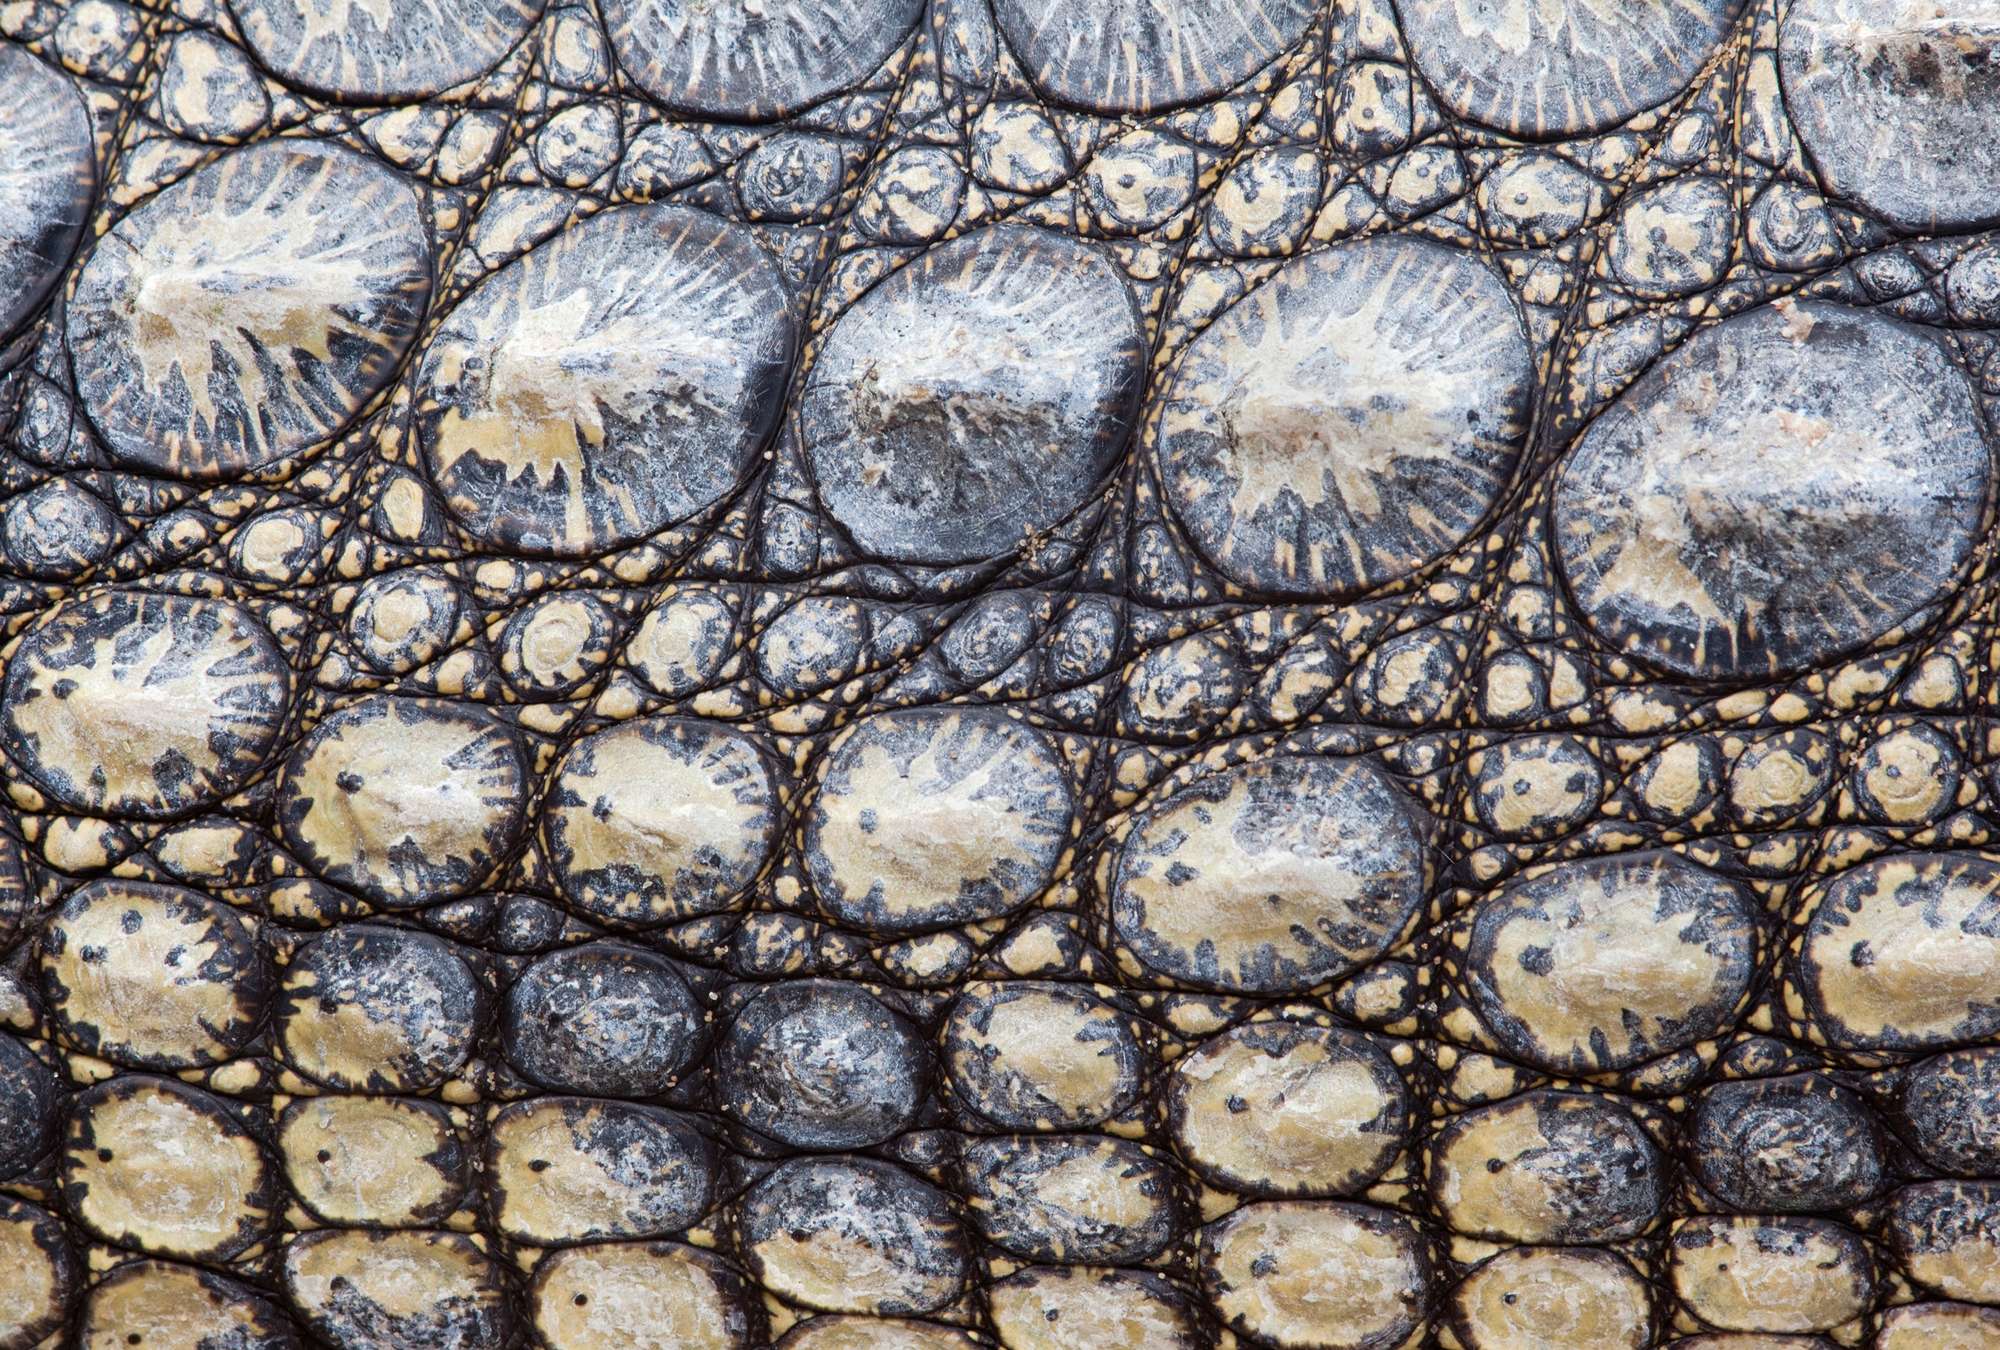             Krokodillenhuid - reptielenlook met 3D-effect
        